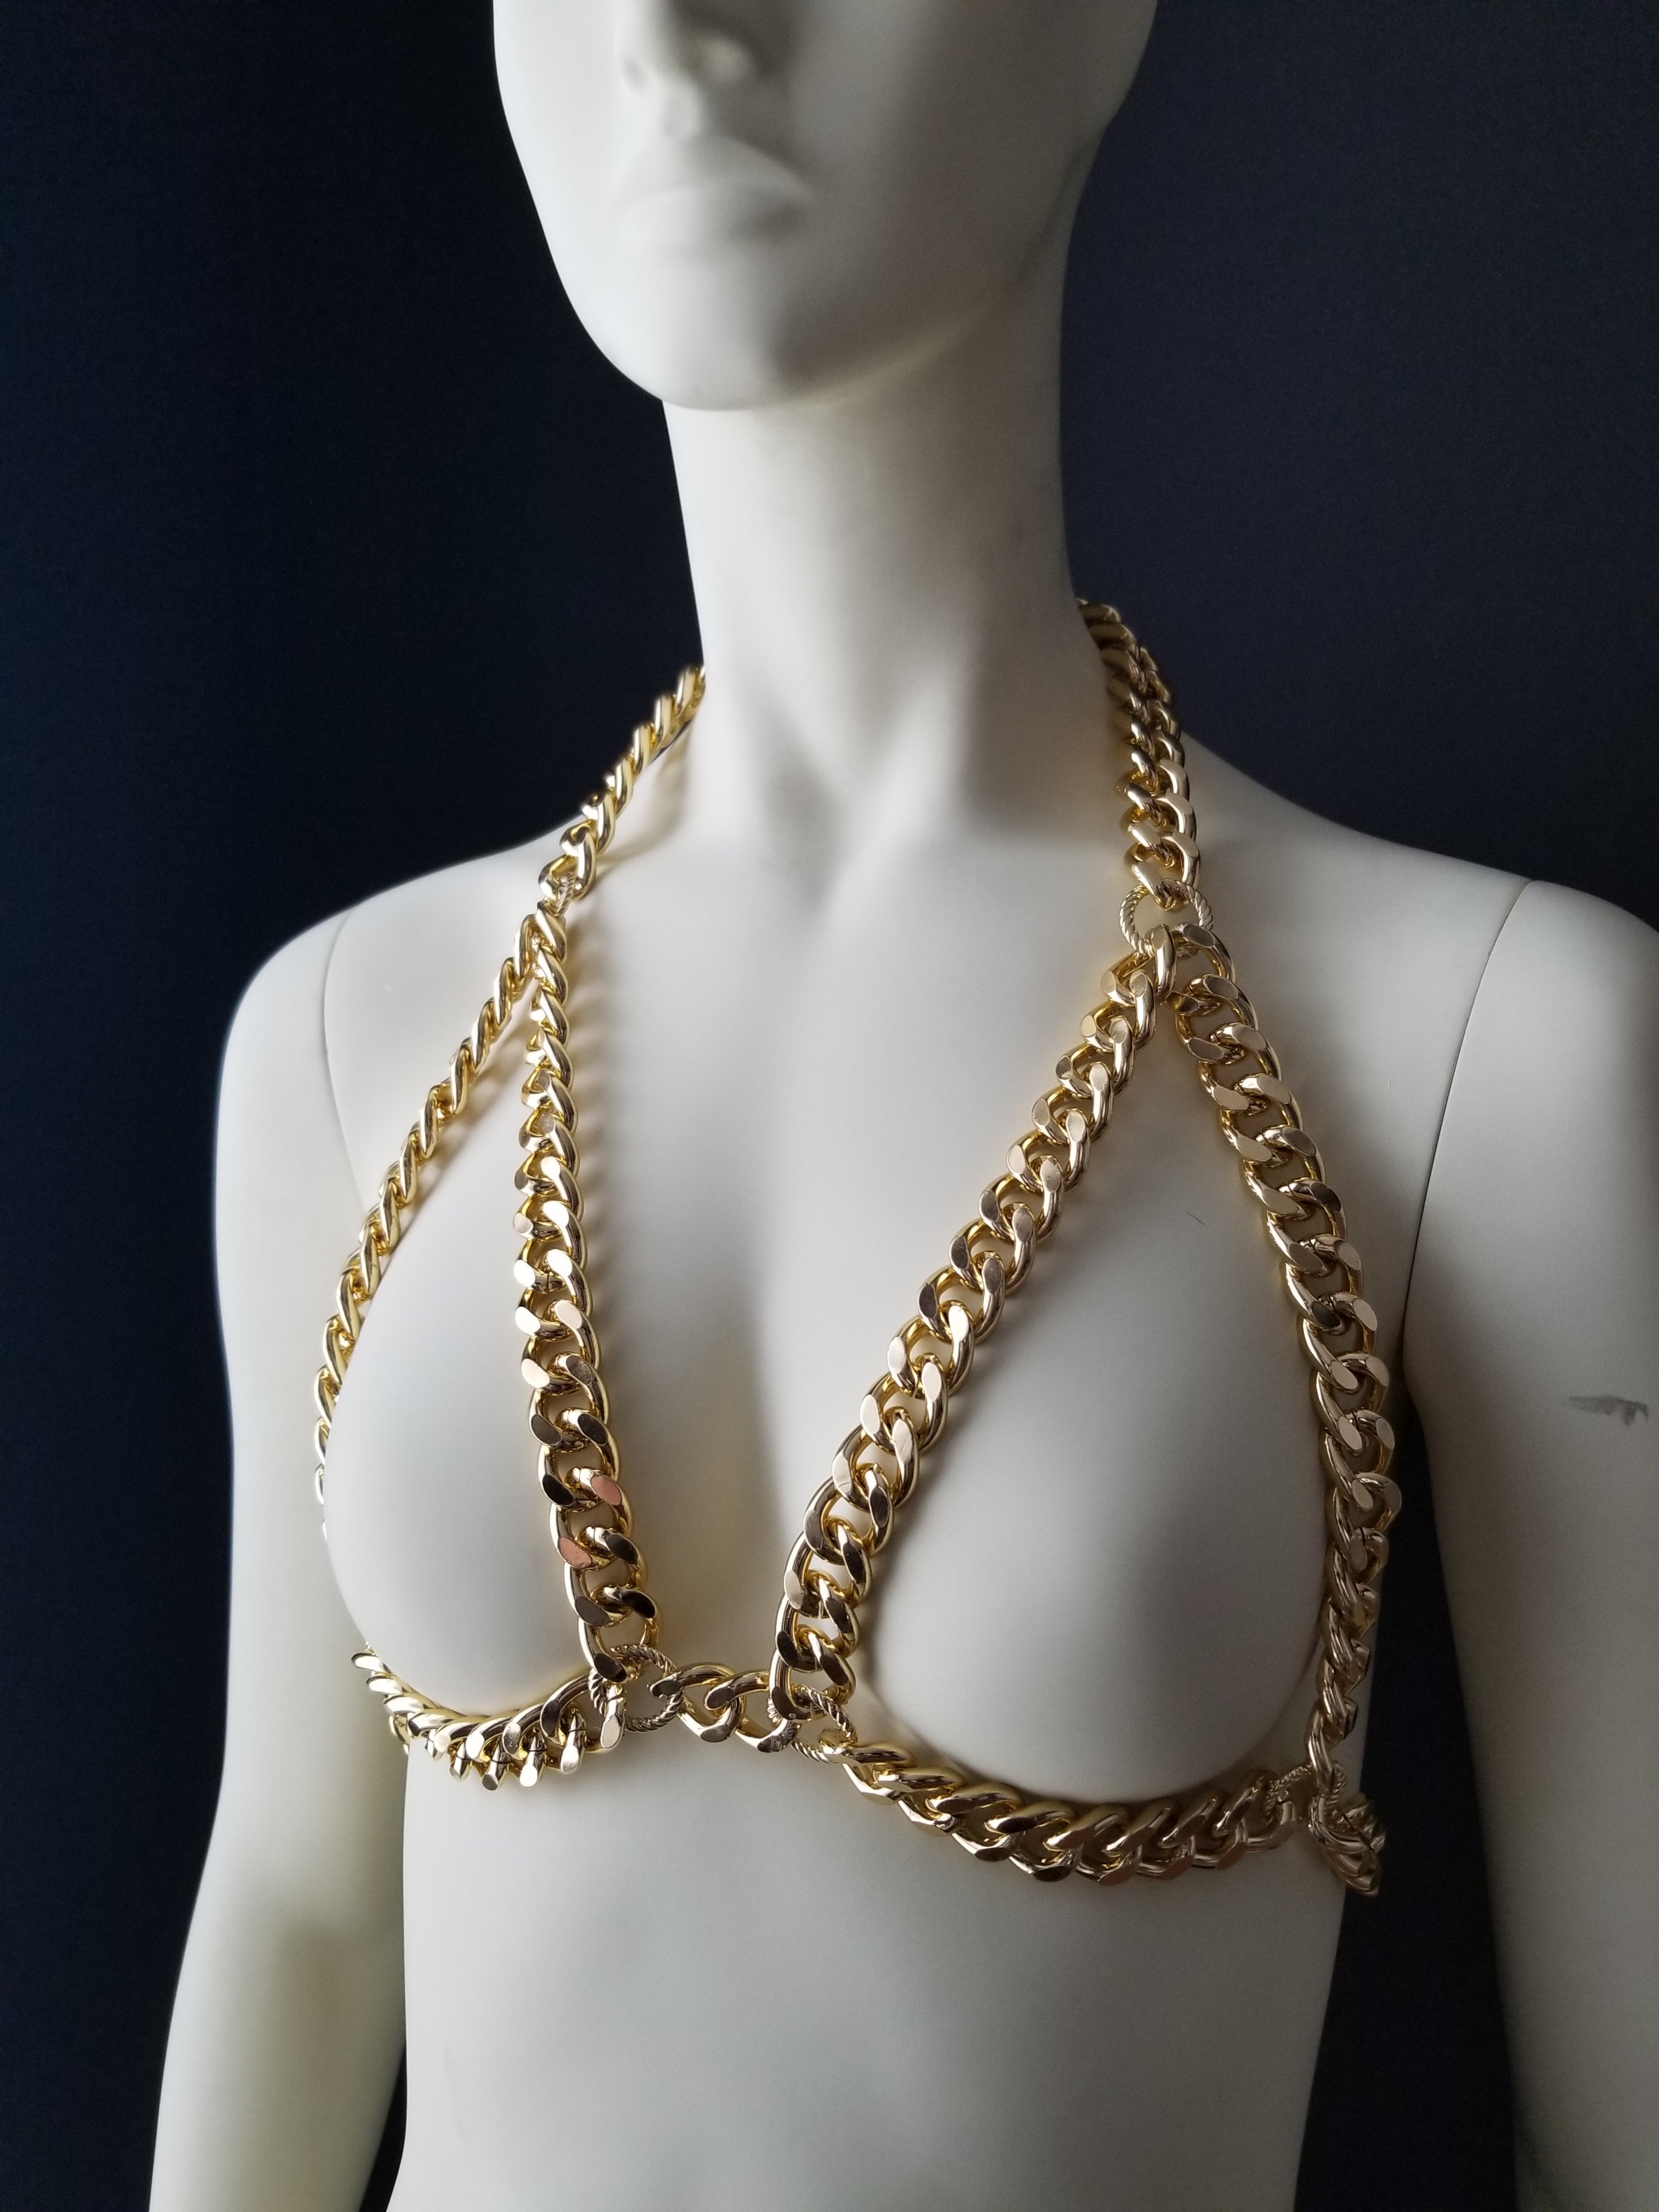 Gold Chain Bralette Bra for Women for Music Festival Costume